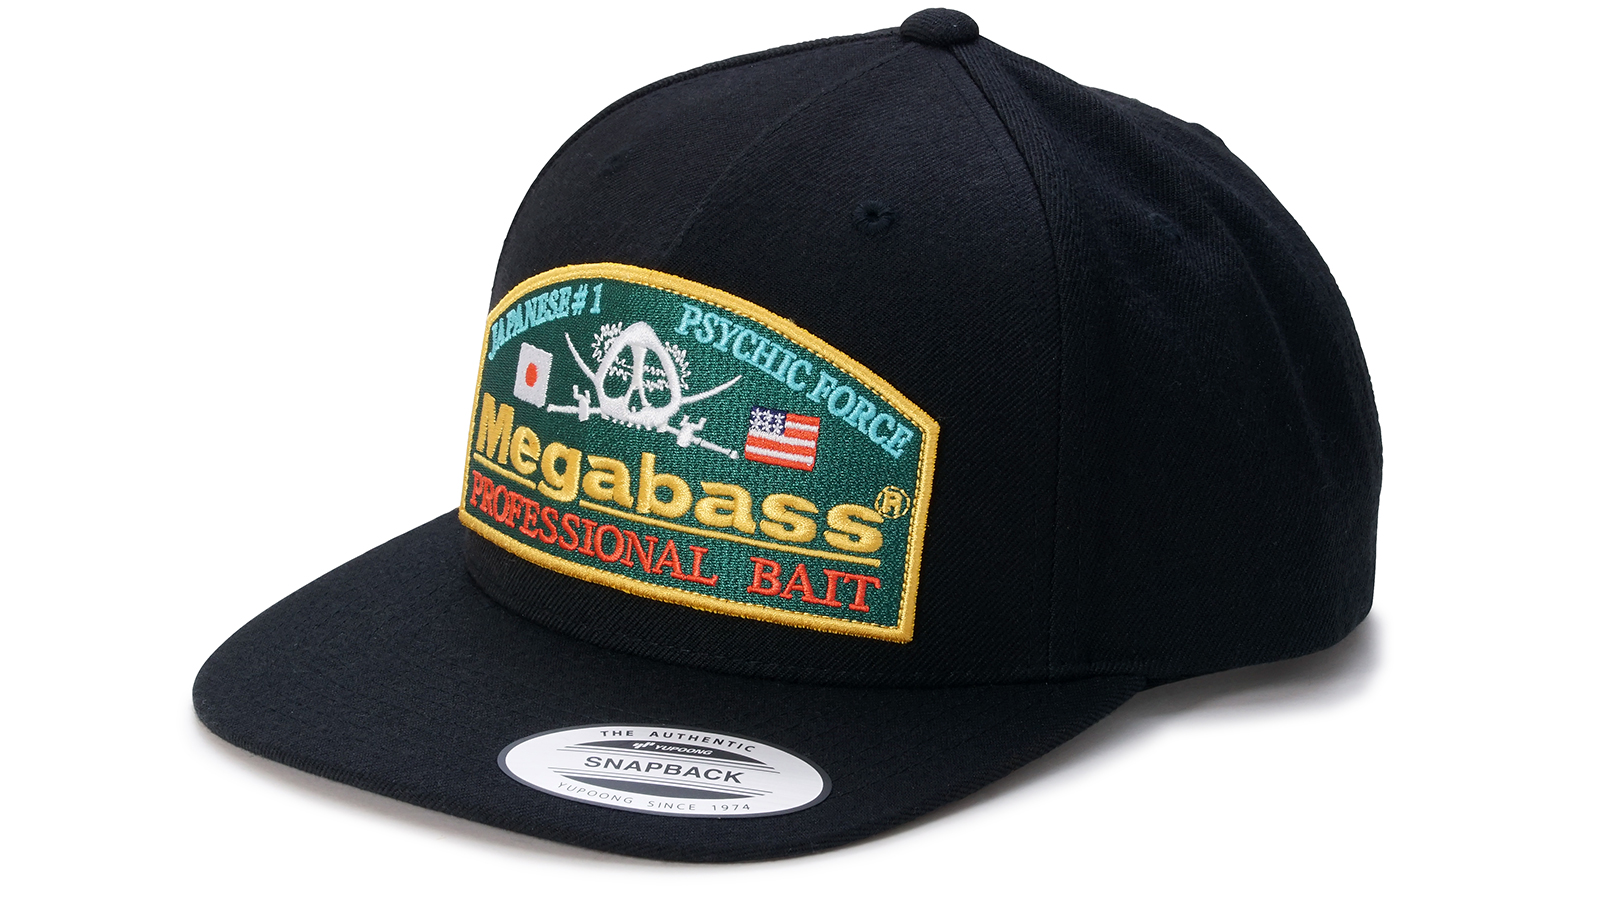 Megabass Hats, Pick Style / Color